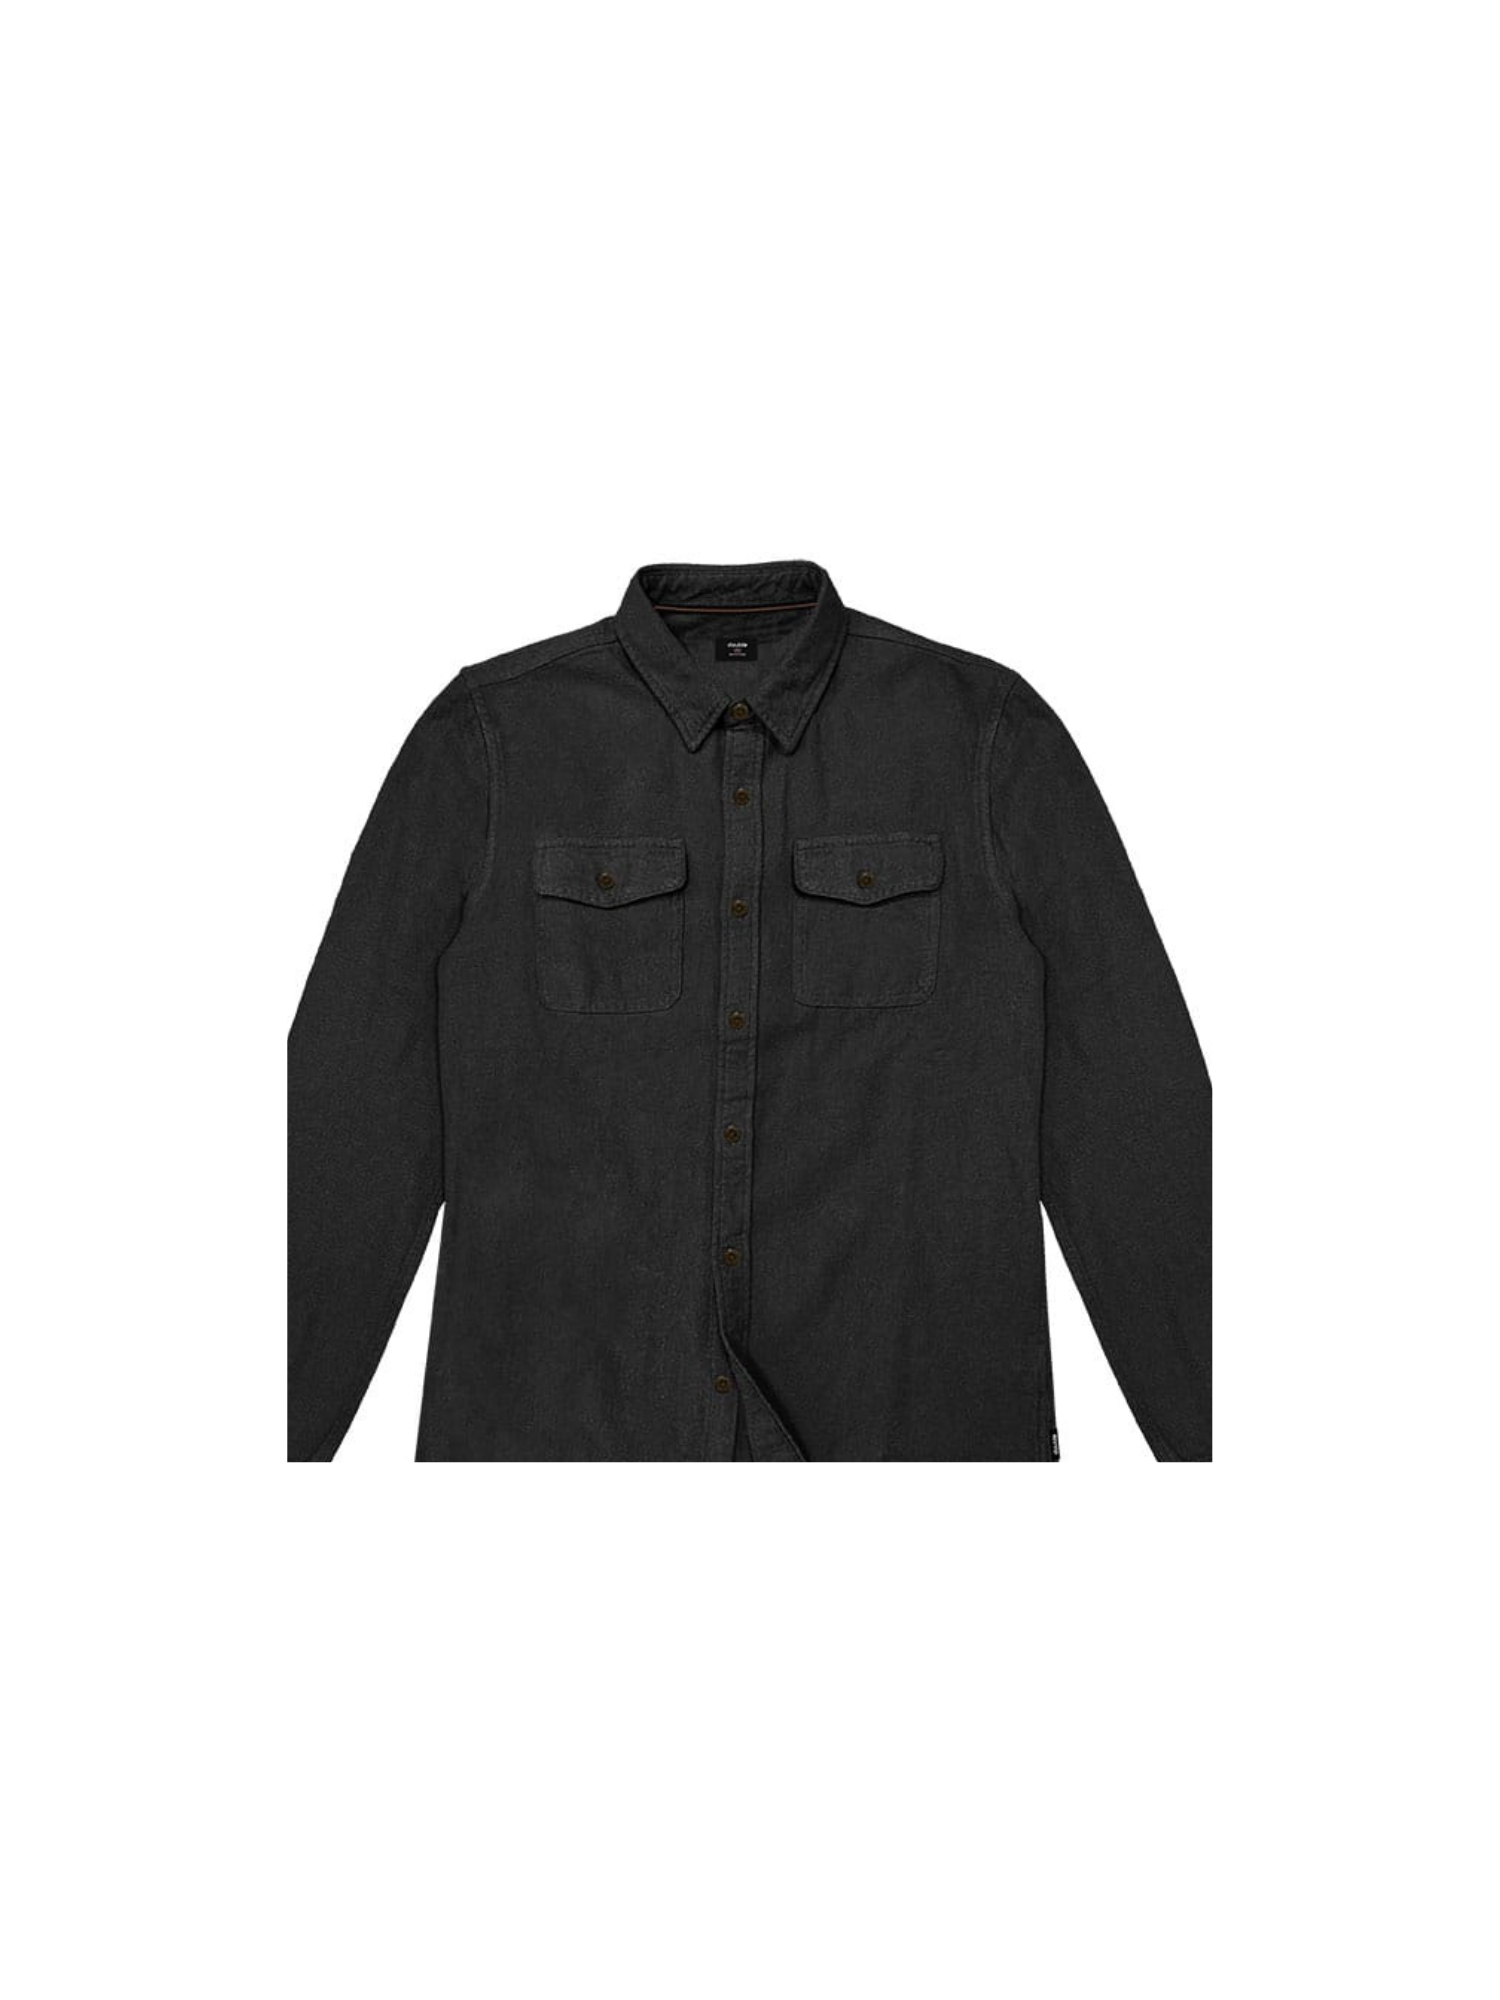 Ανδρικό Μονόχρωμο Flannel Πουκάμισο Plus Size - Μαύρο